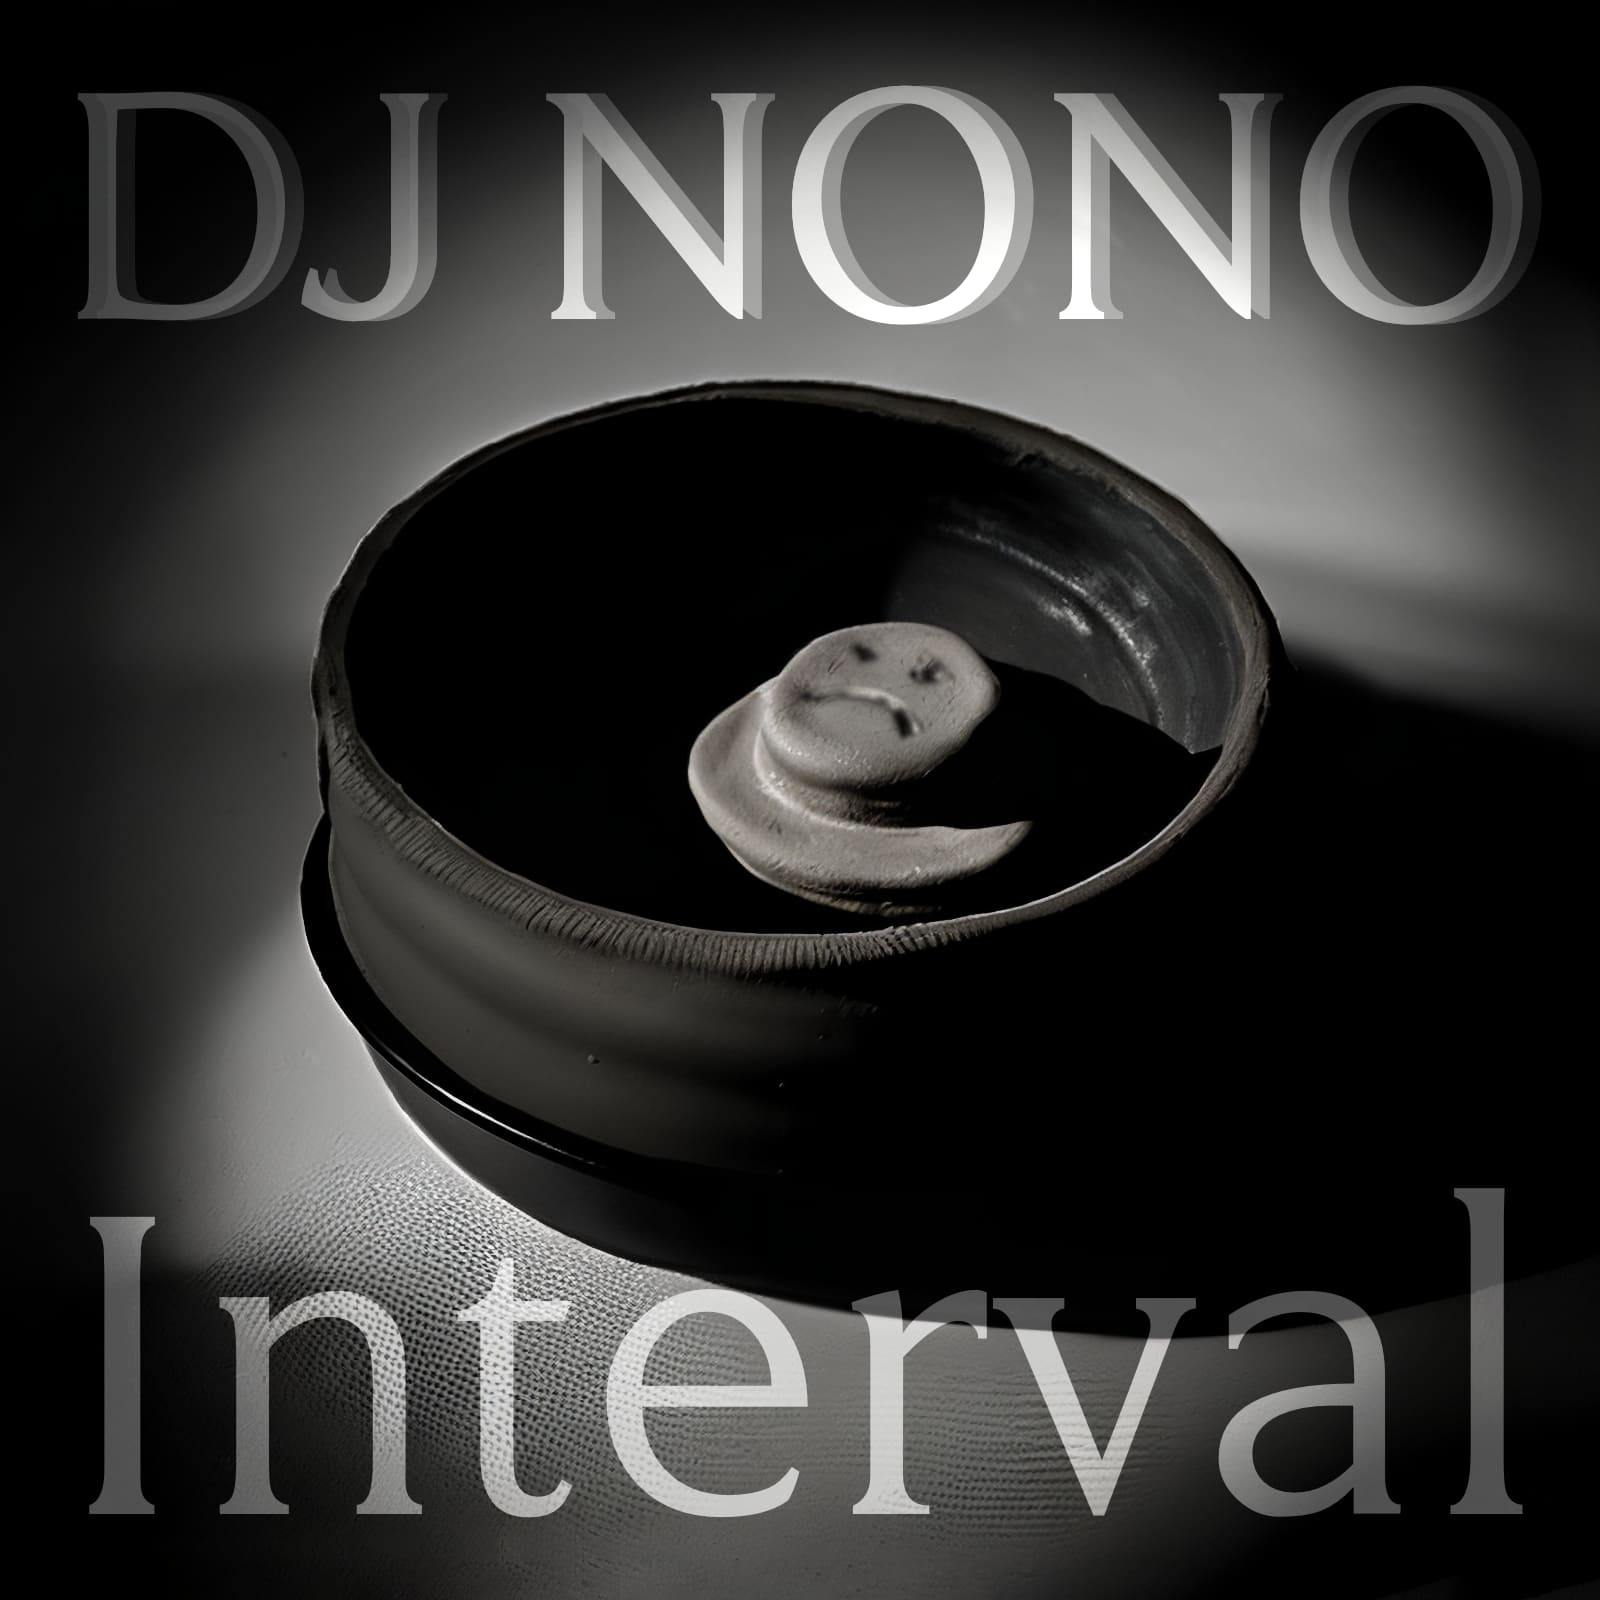 DJNoNo - Interval album cover mashups